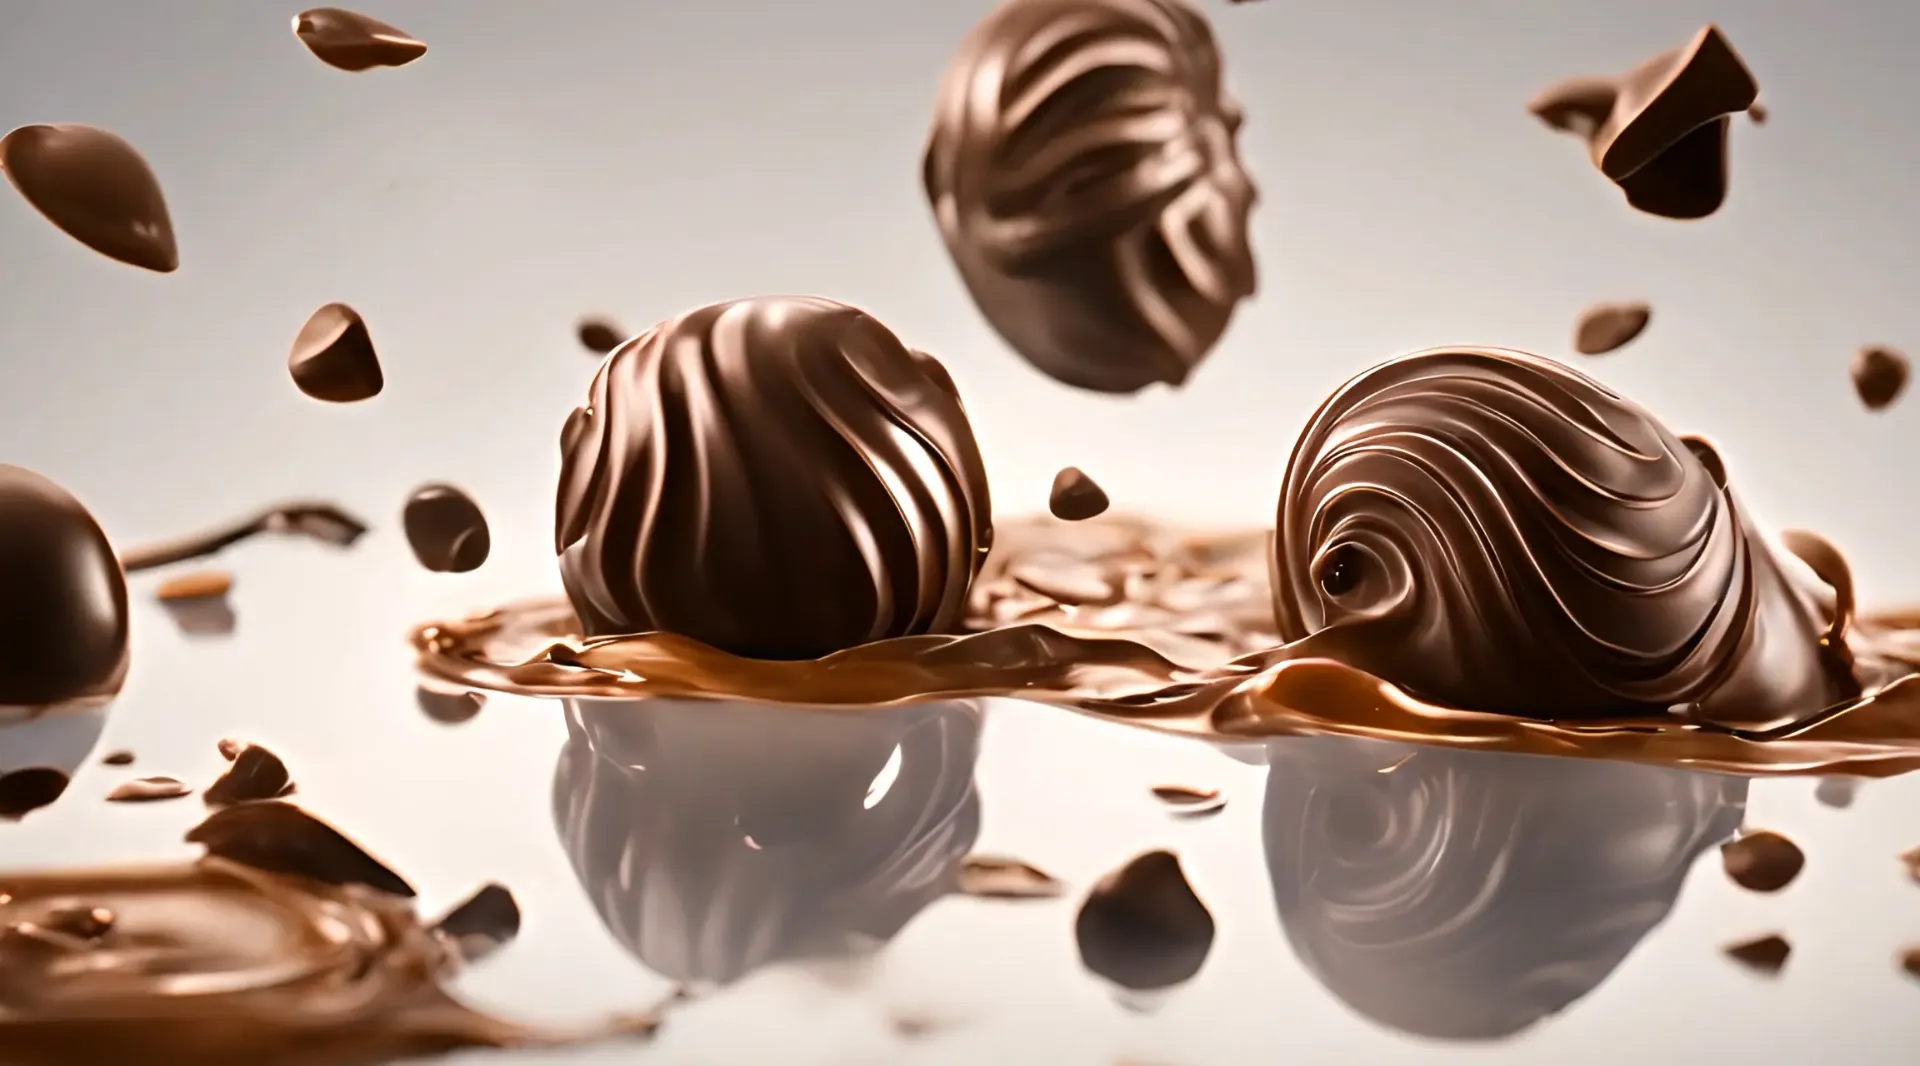 Gourmet Chocolate Cascade Video Backdrop